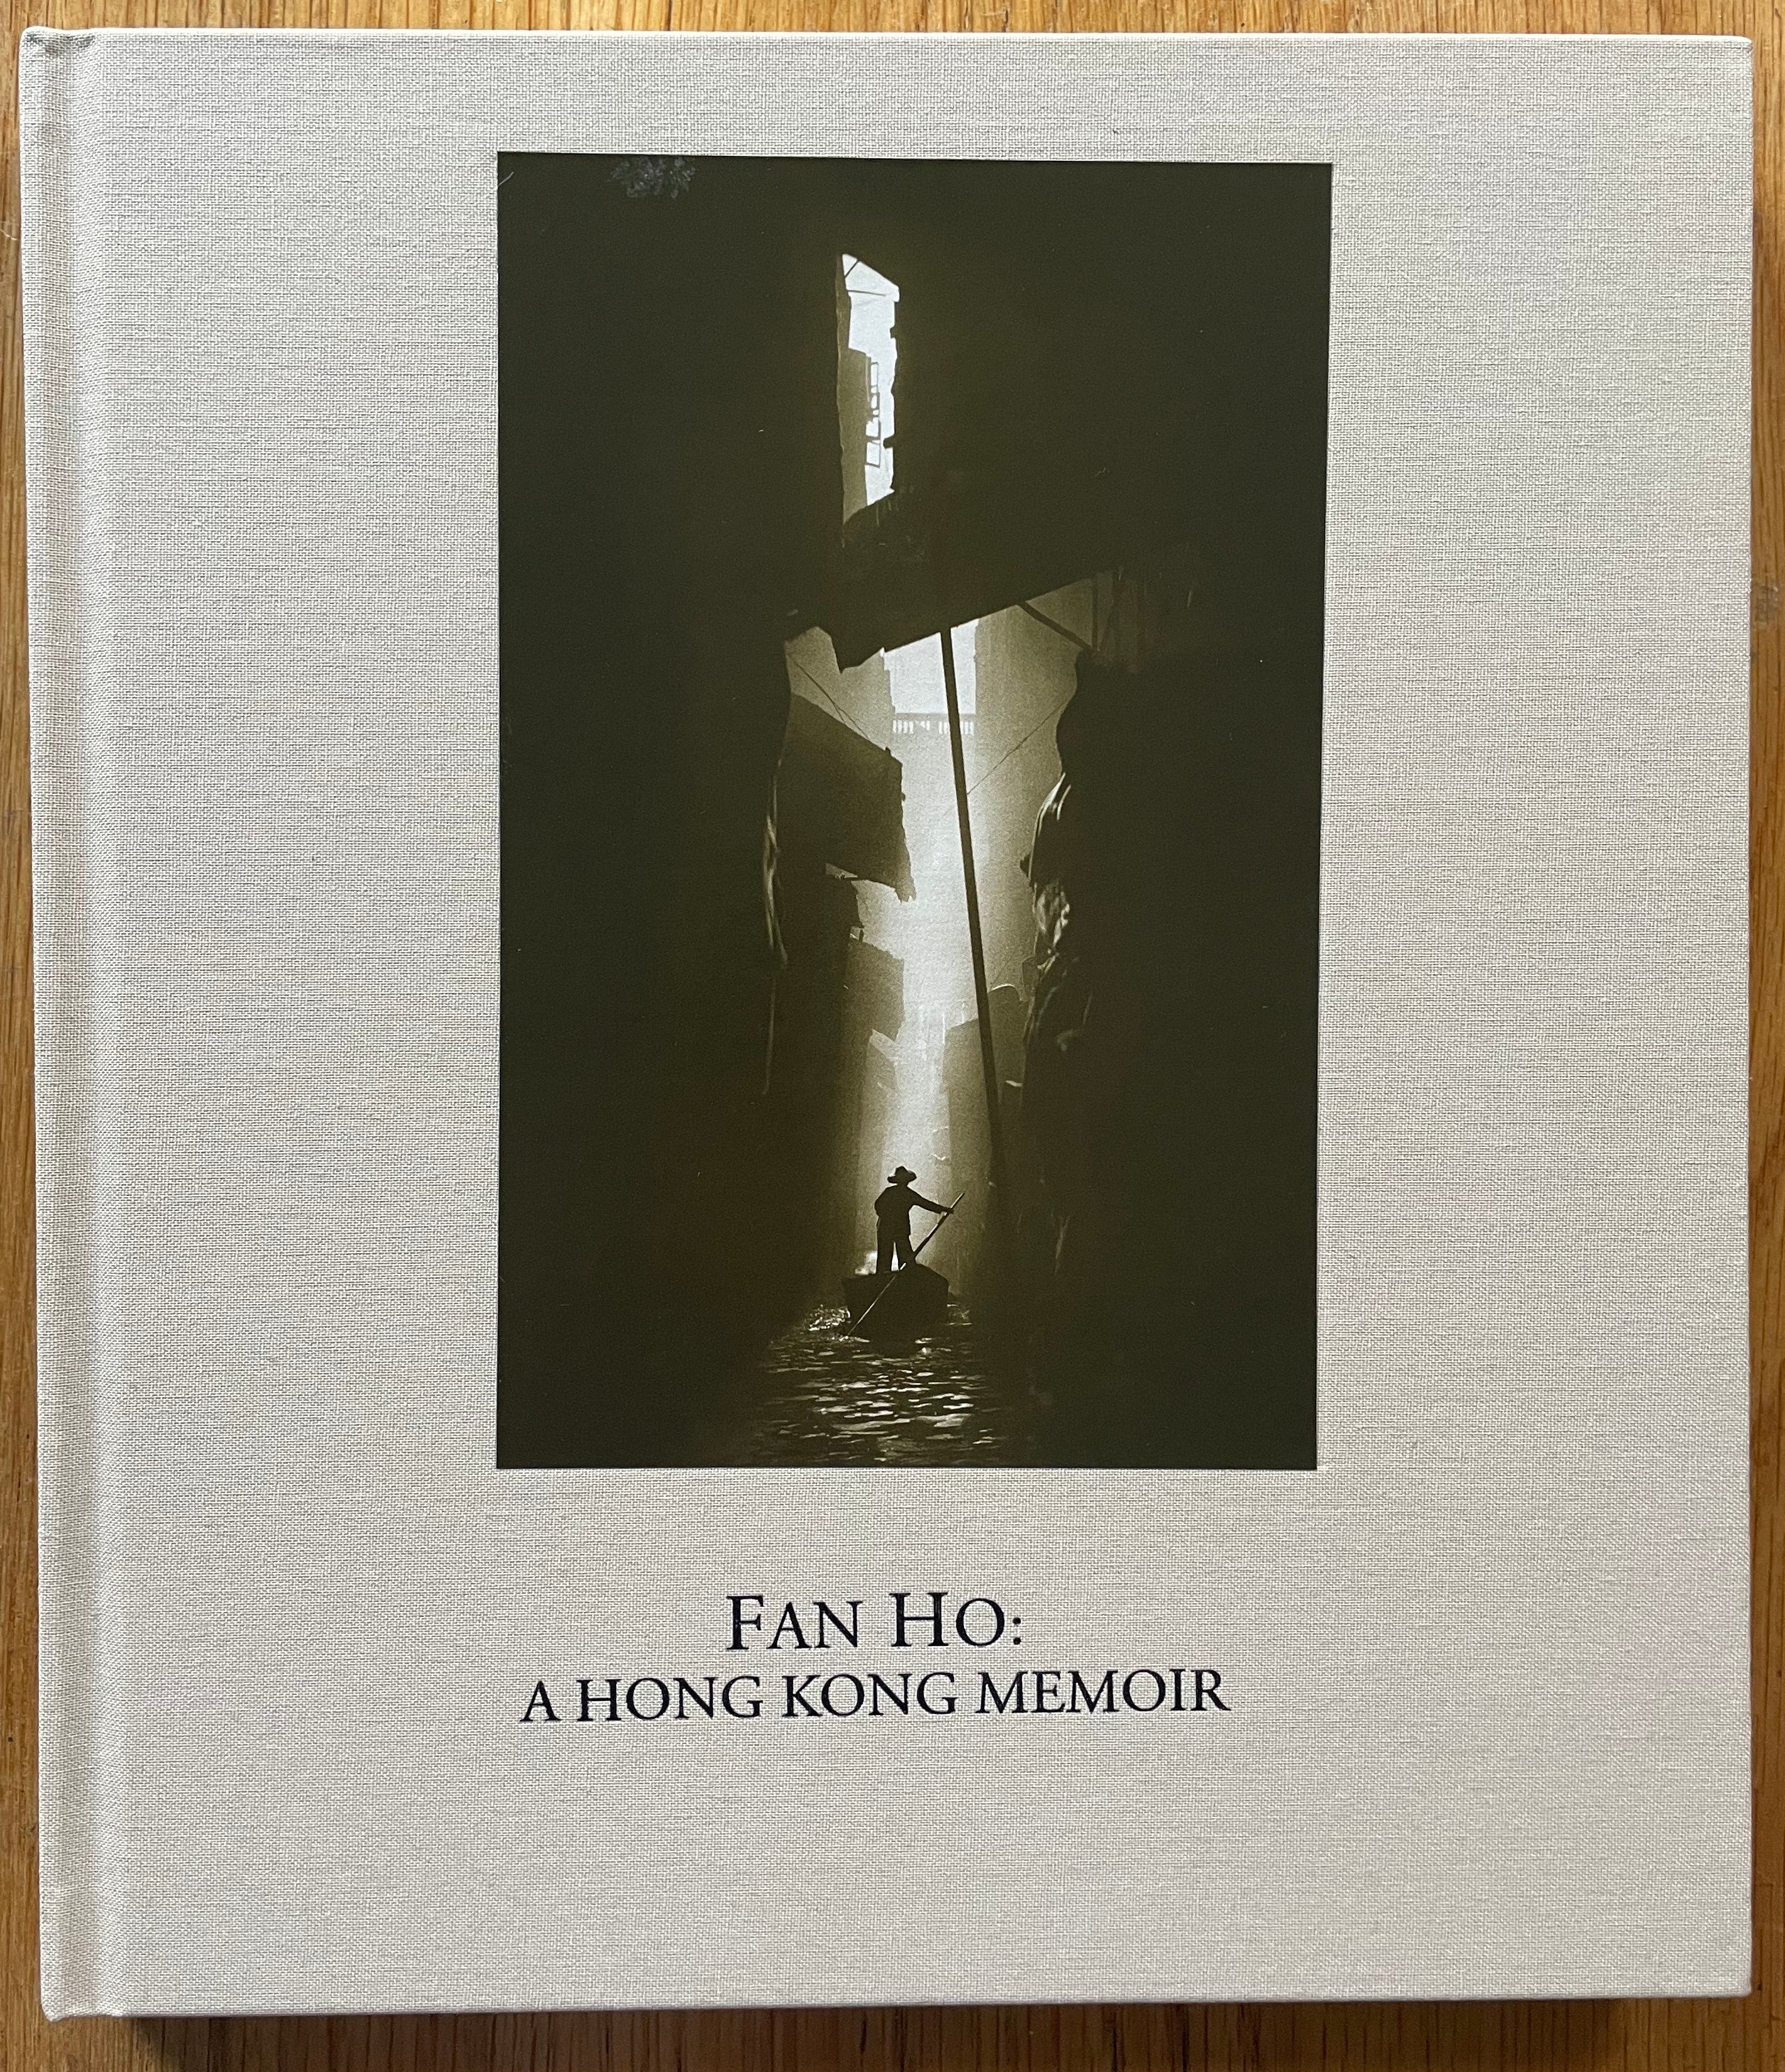 A Hong Kong Memoir